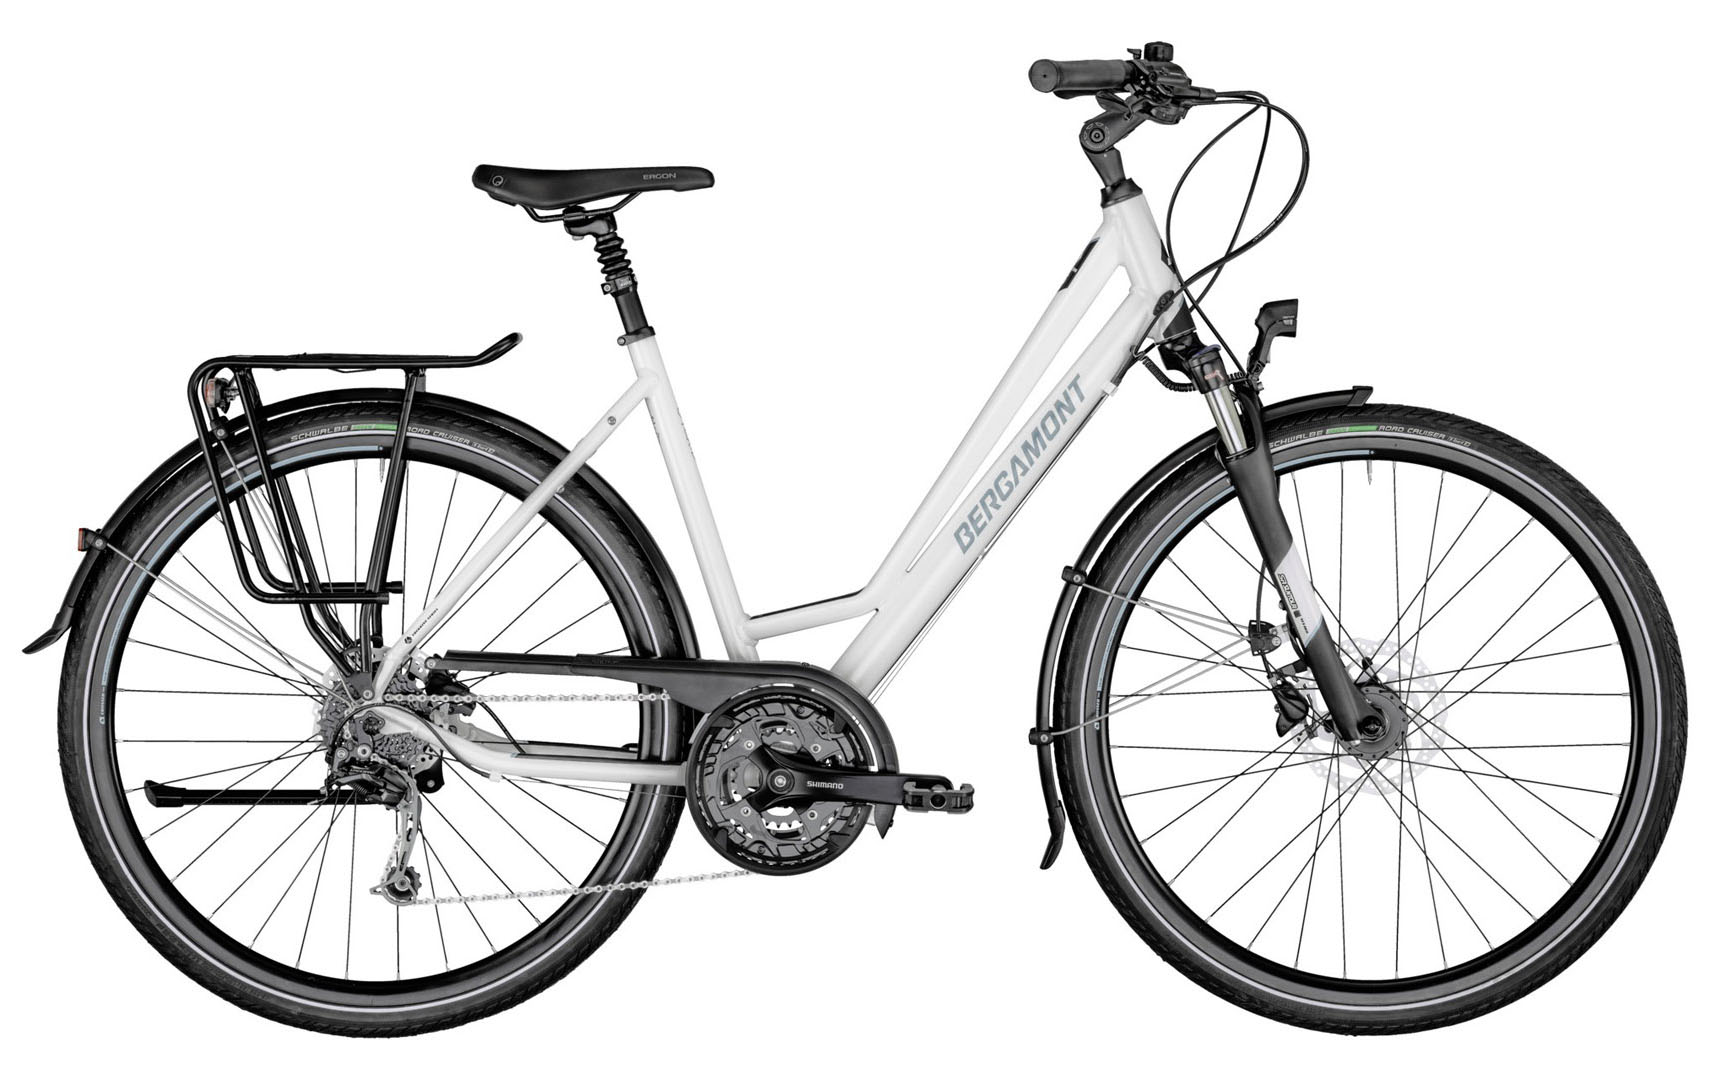  Отзывы о Женском велосипеде Bergamont Horizon 6 Amsterdam 2021